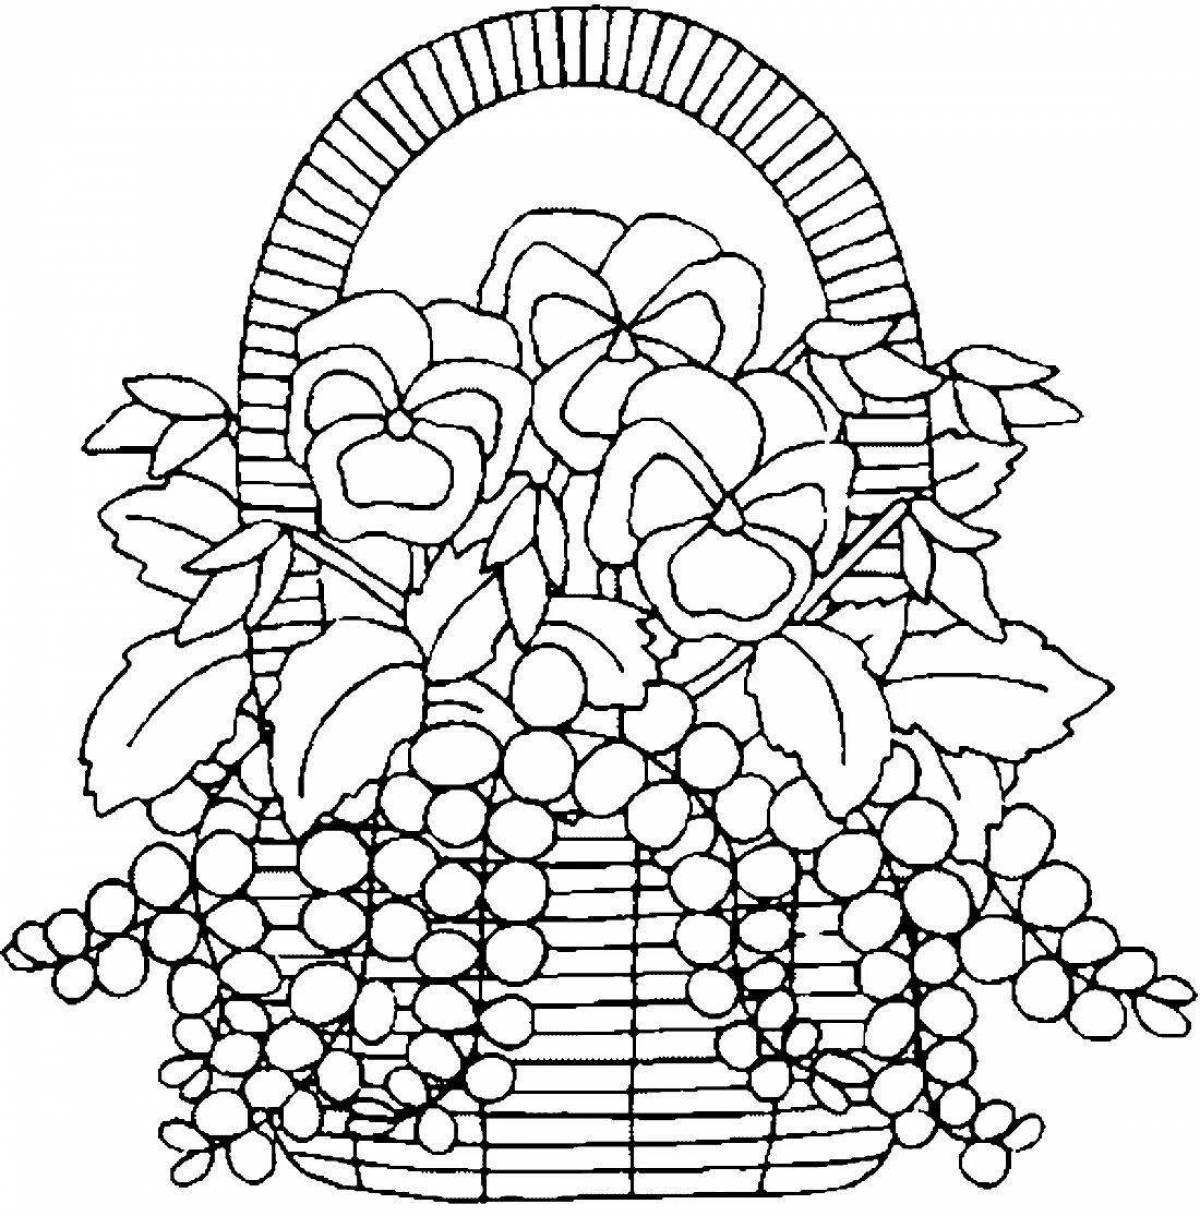 Flower basket #5